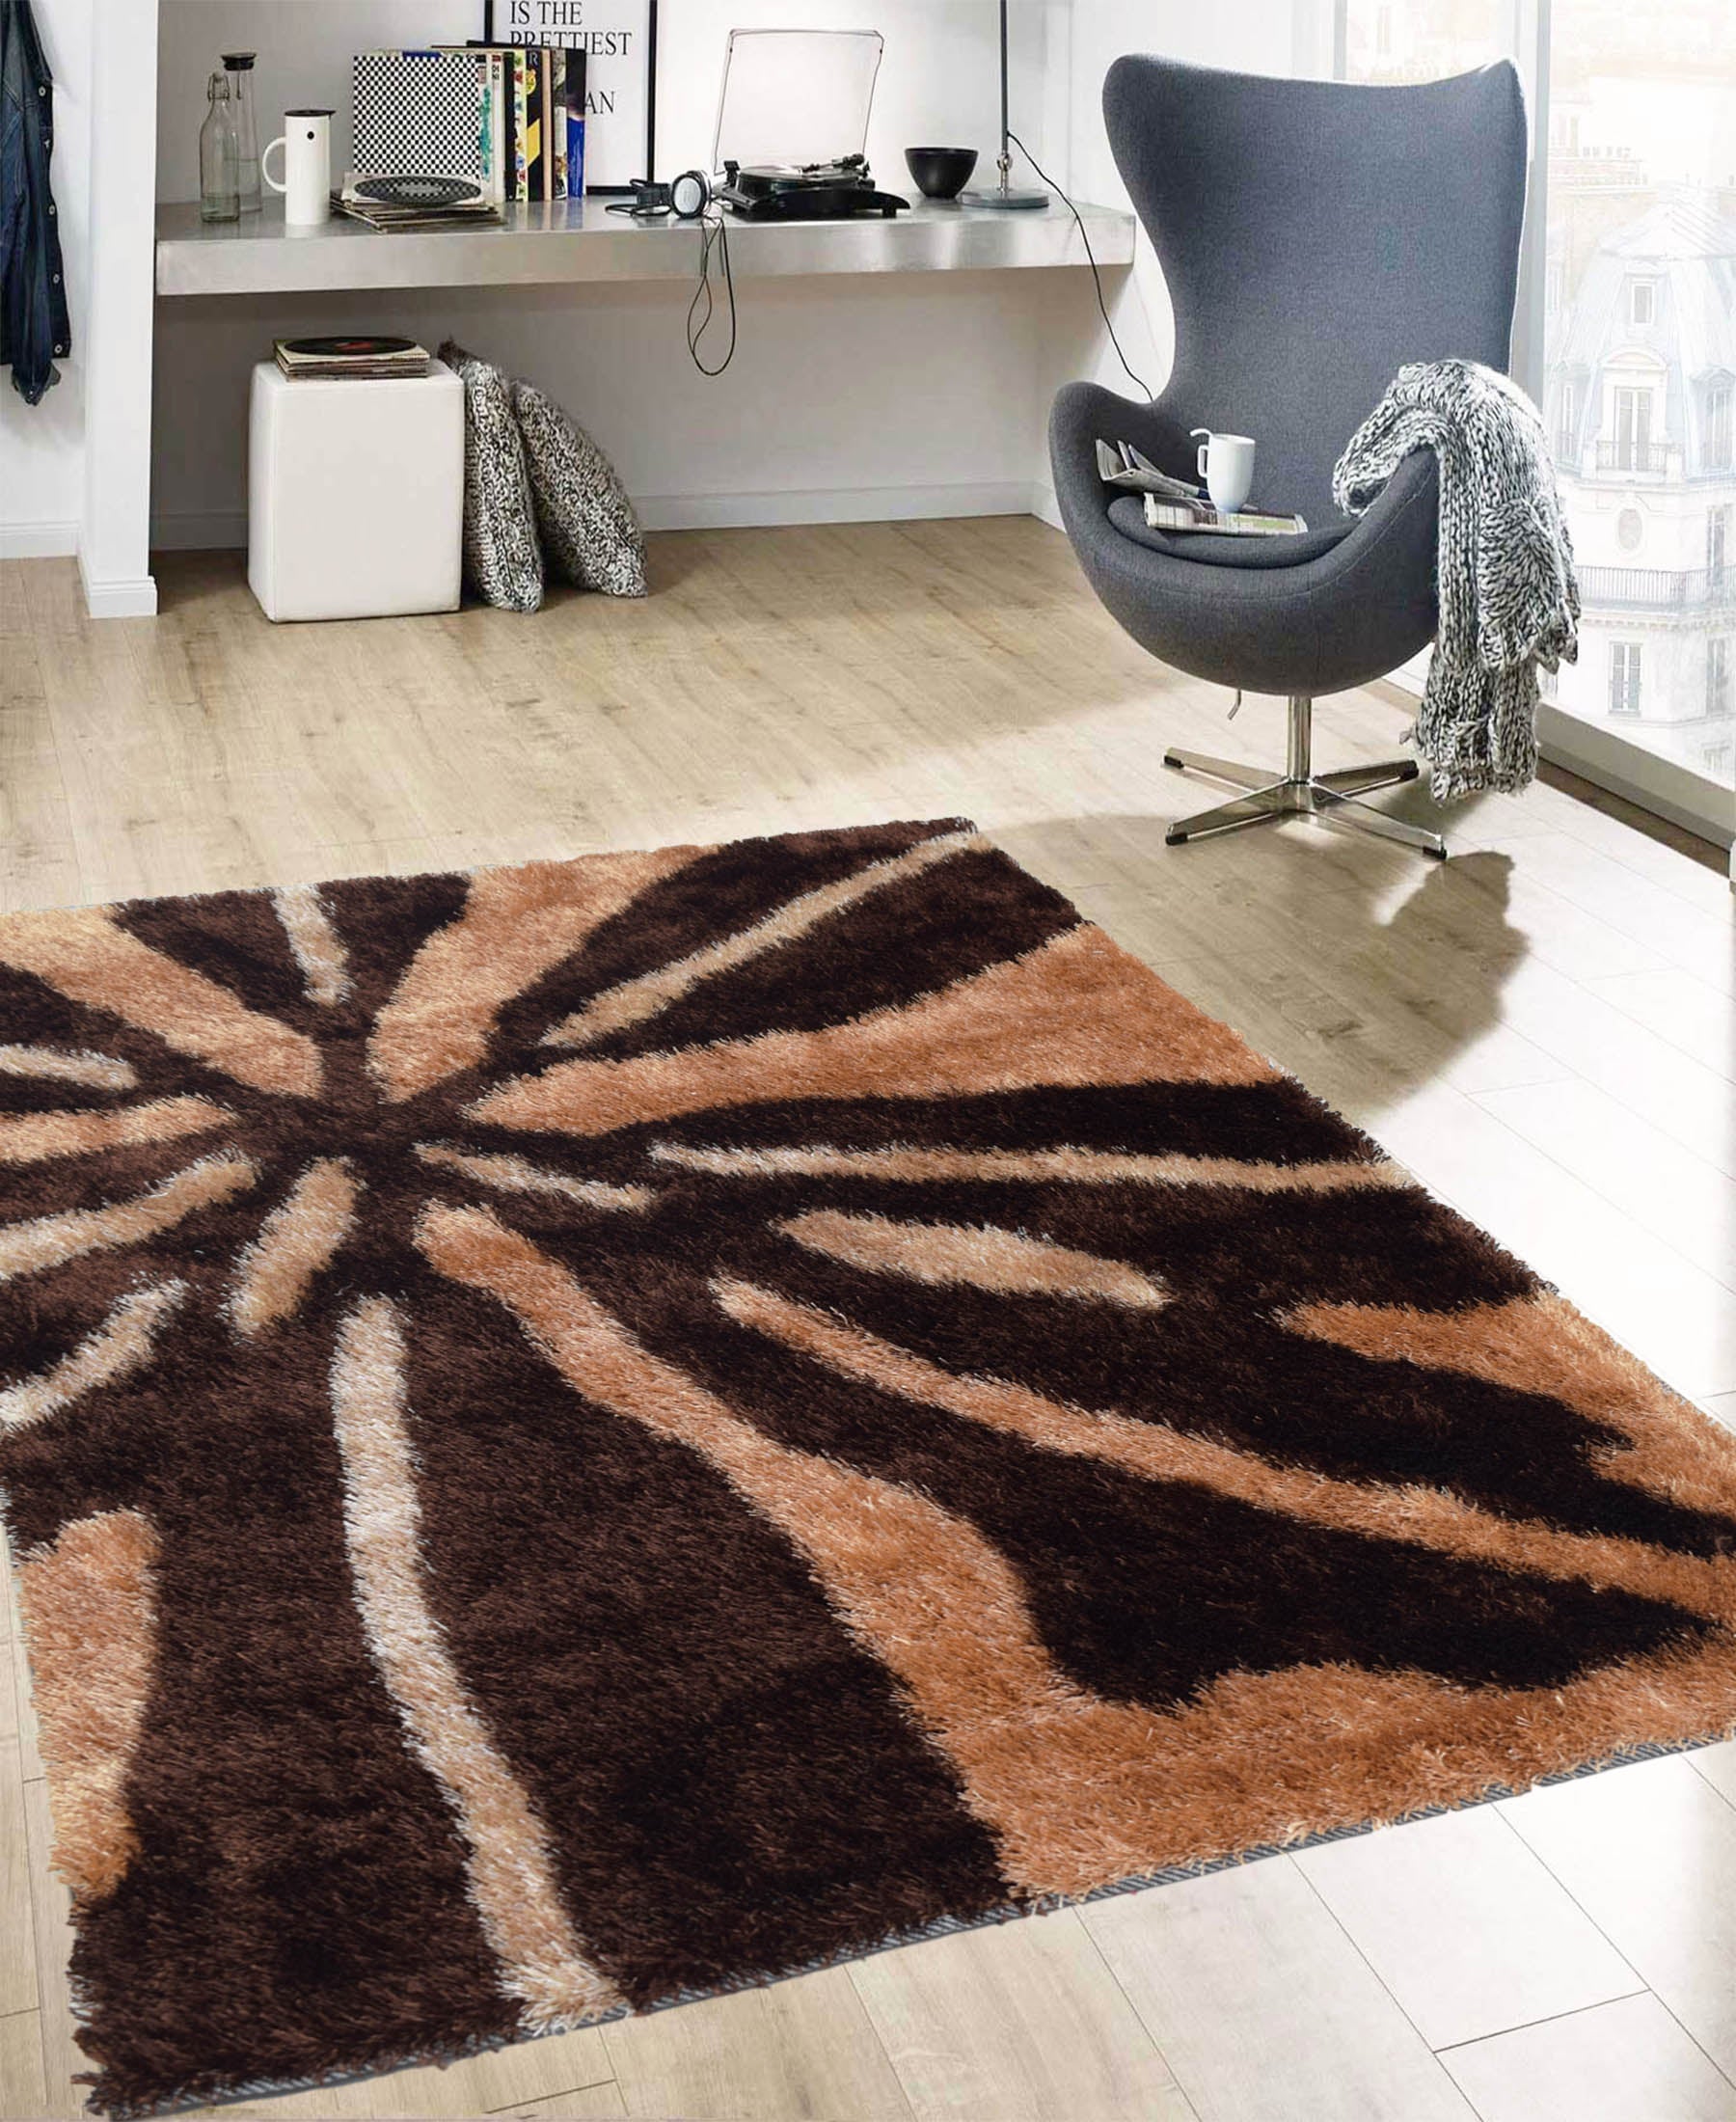 Shaggy Star Struck Carpet 1200mm x 1600mm - Brown